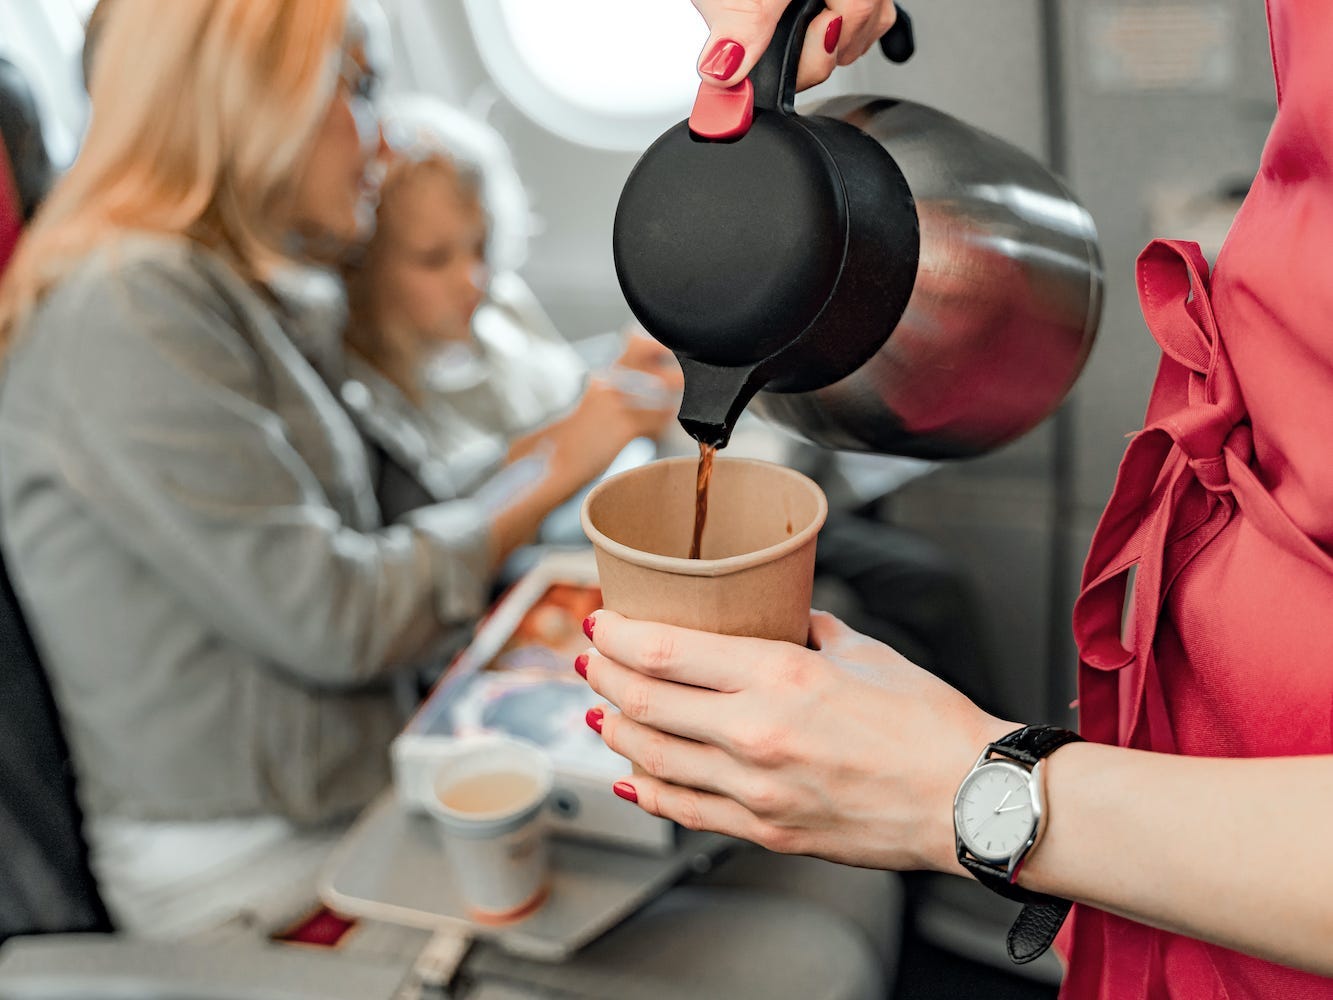 Không nên gọi trà hay cà phê ở trên máy bay - Ảnh: Vakantiehub